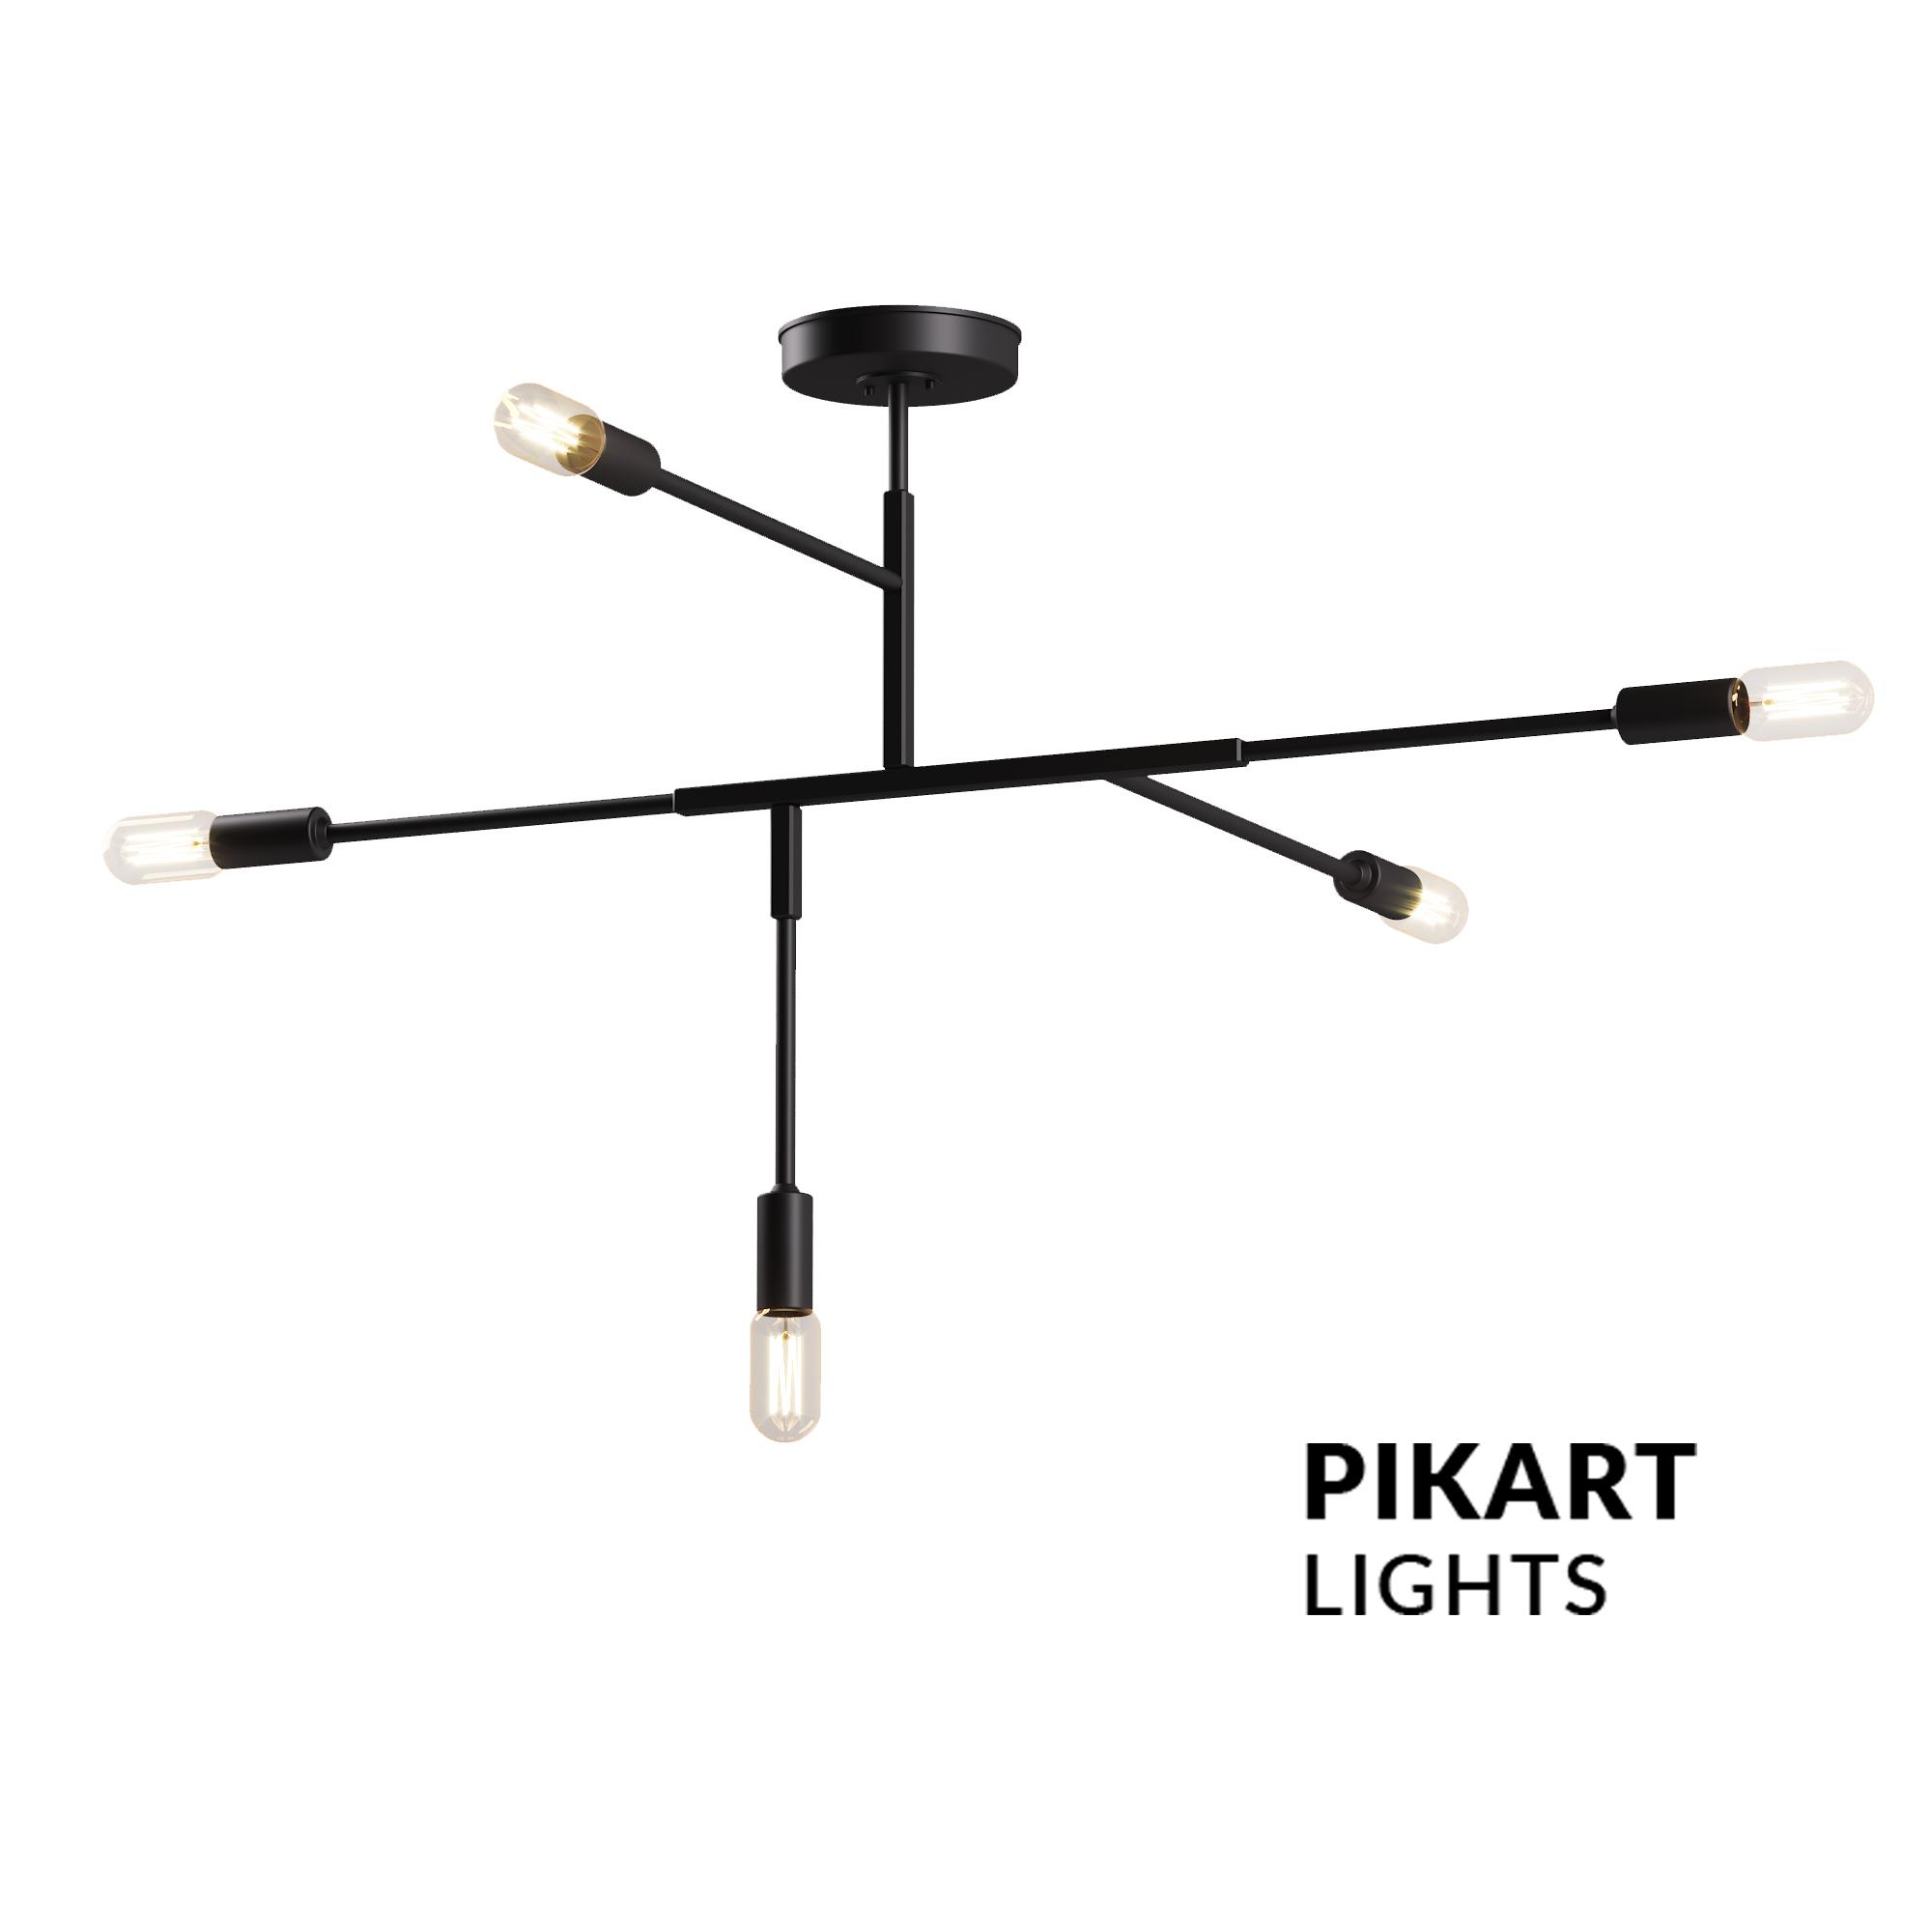 Space lamp, SKU. 5420 by Pikartlights 3d model